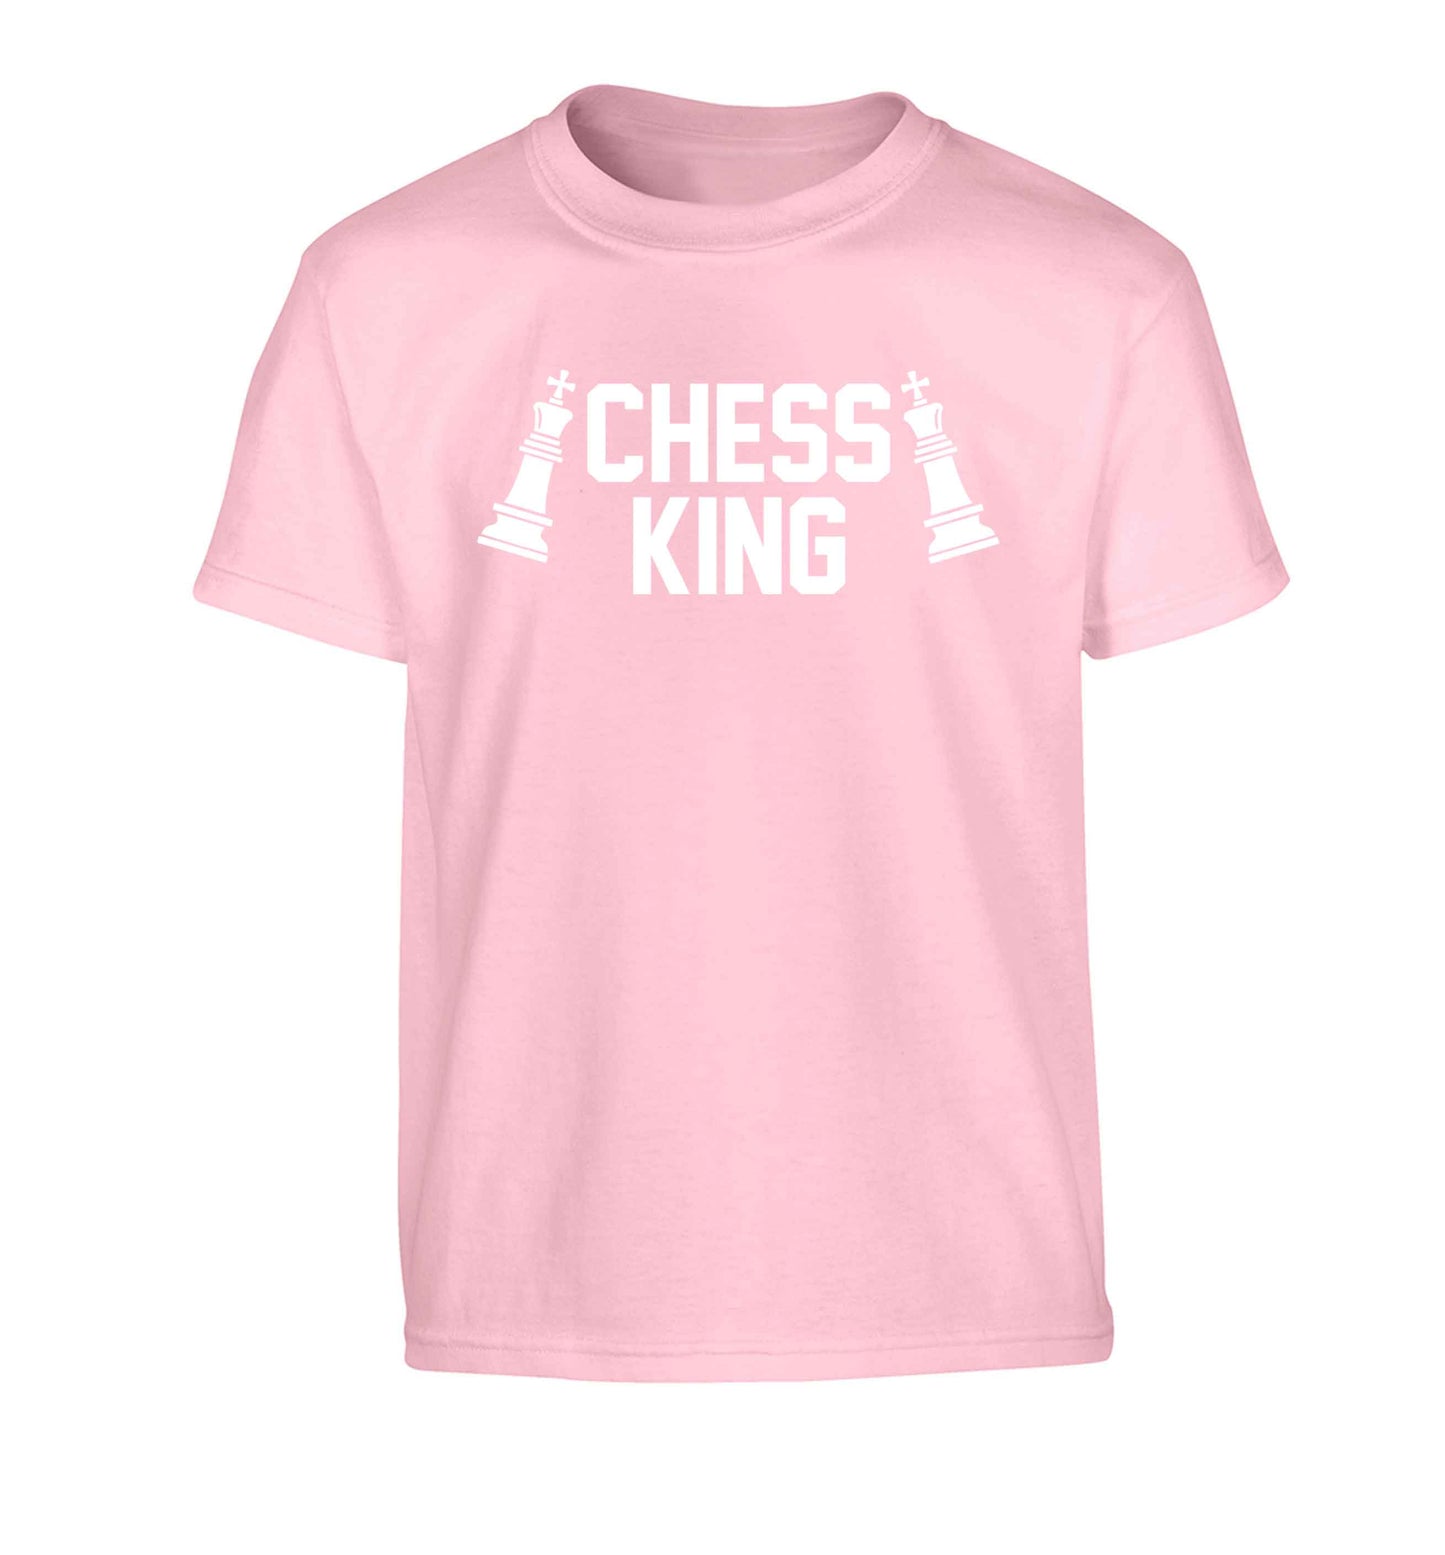 Chess king Children's light pink Tshirt 12-13 Years